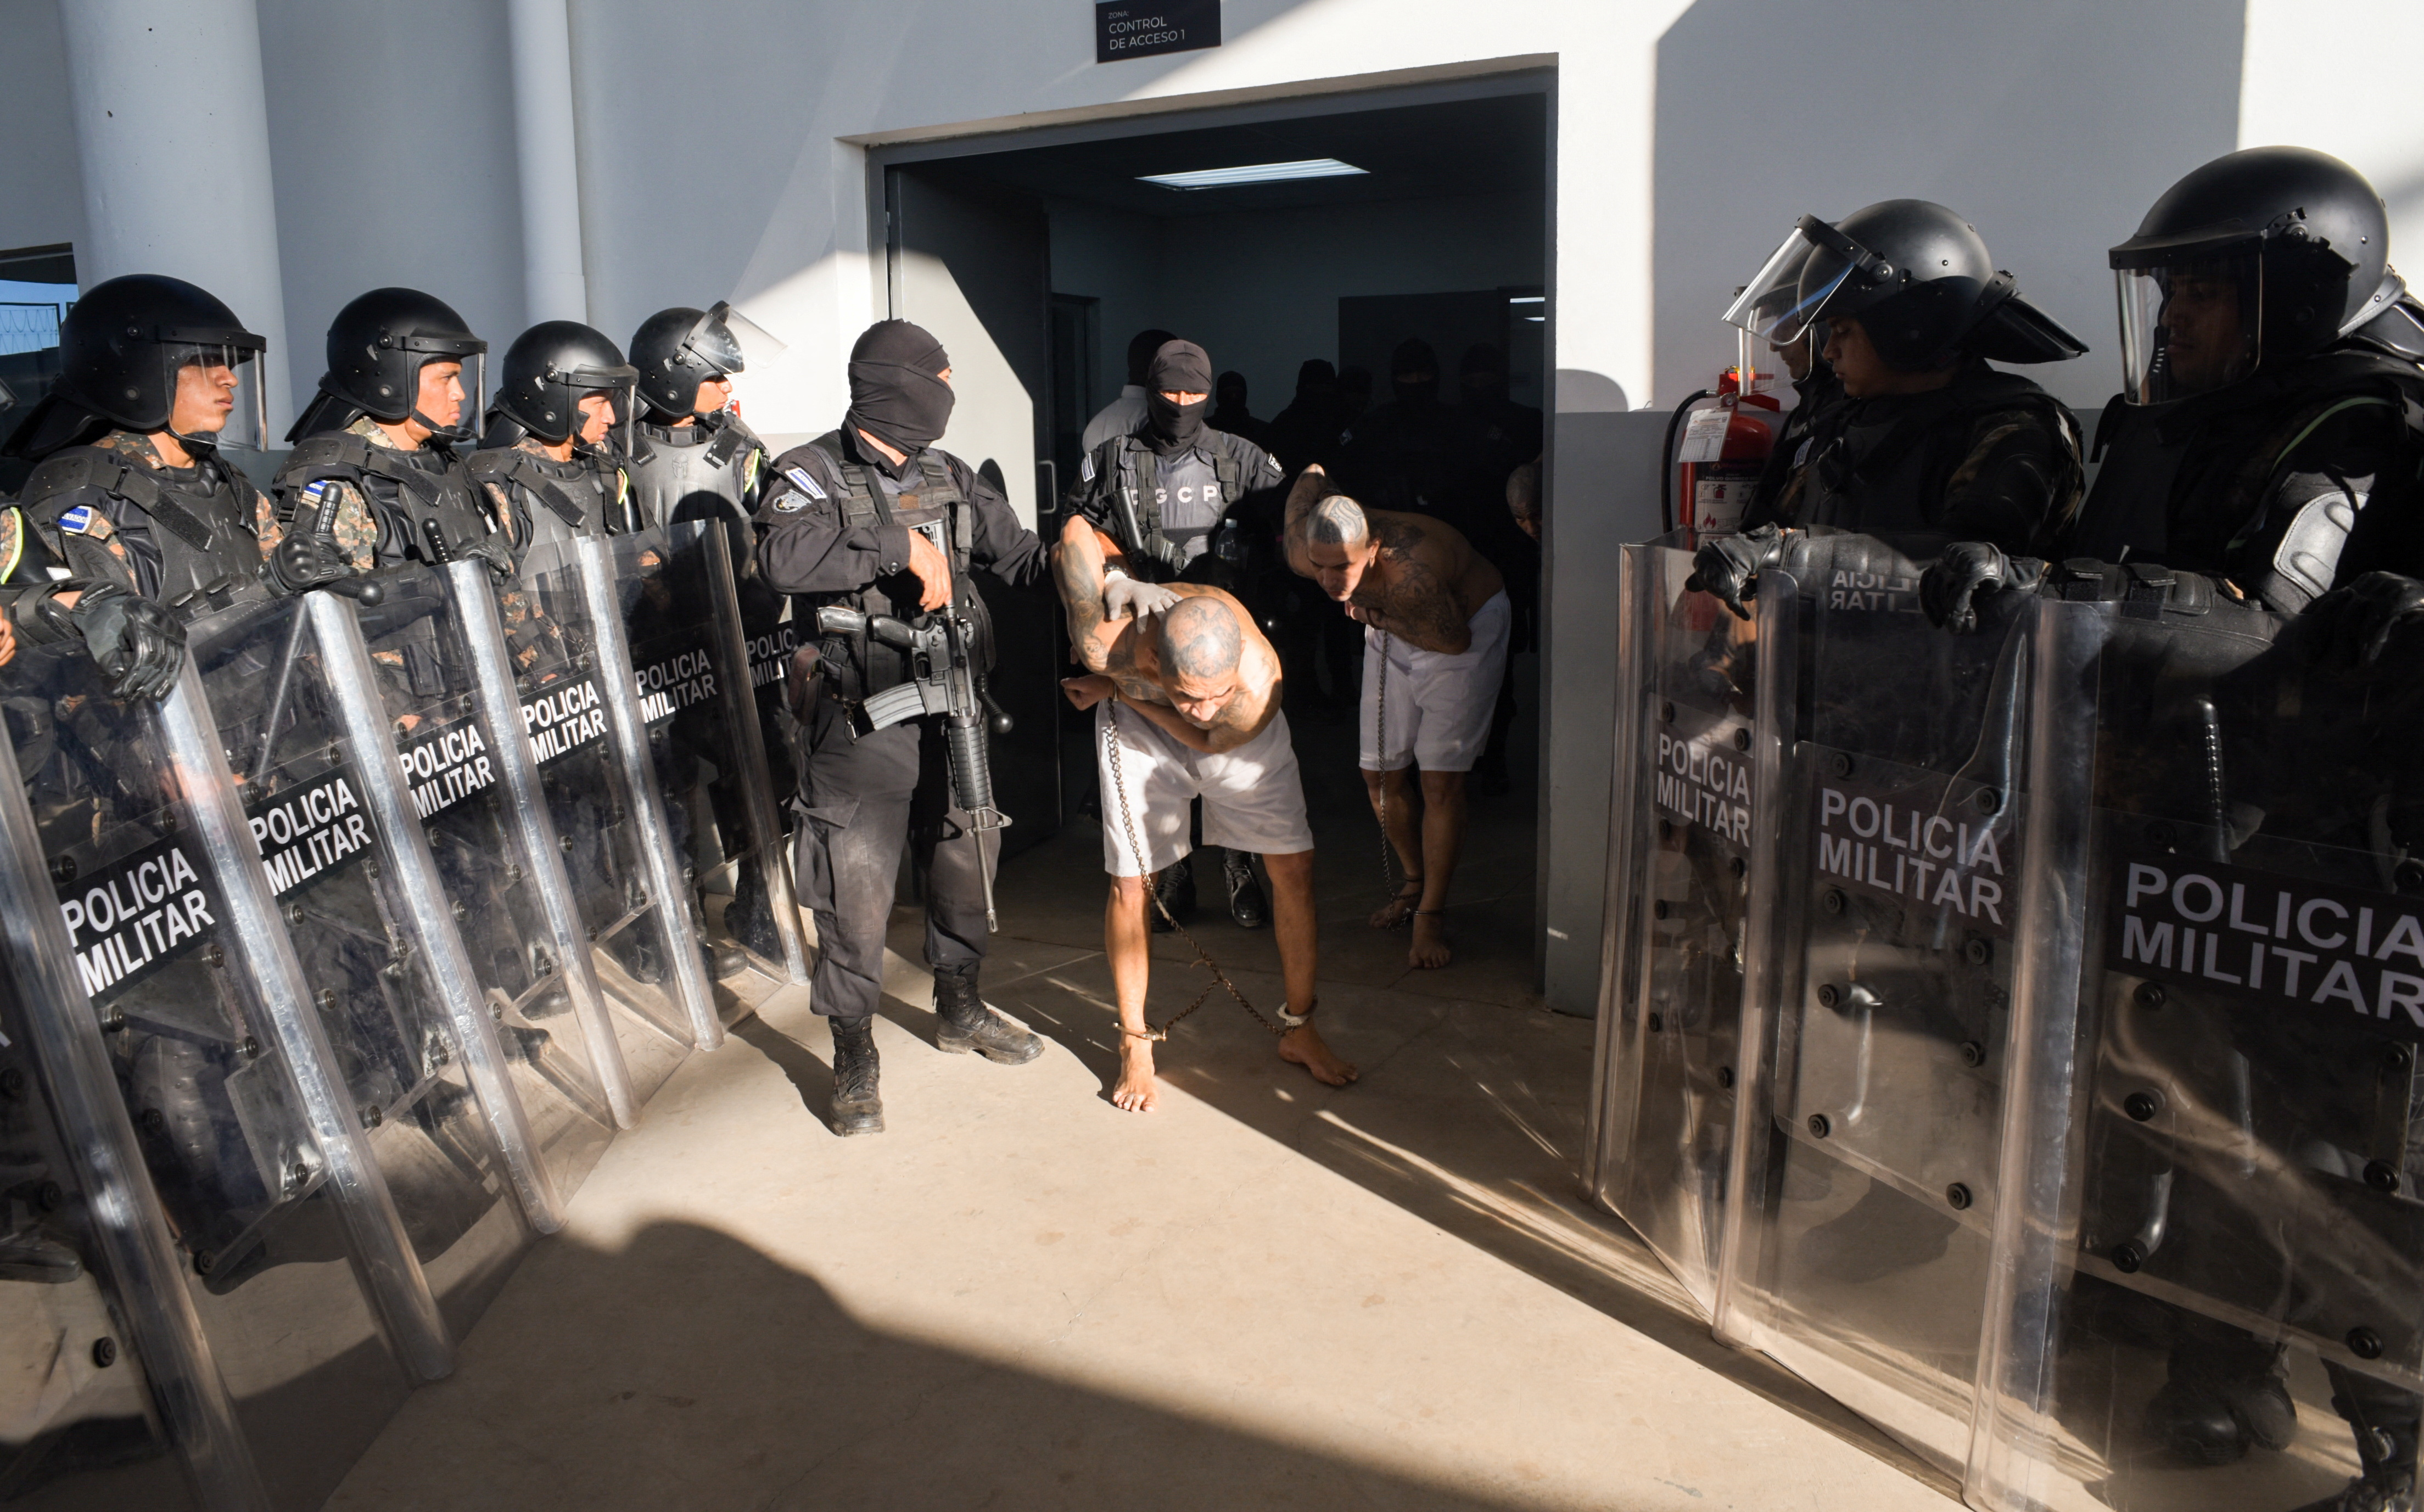 Ya en la gigantesca prisión, los pandilleros pertenecientes principalmente a la Mara Salvatrucha (MS-13) y a Barrio 18, fueron ingresando por grupos a varias celdas